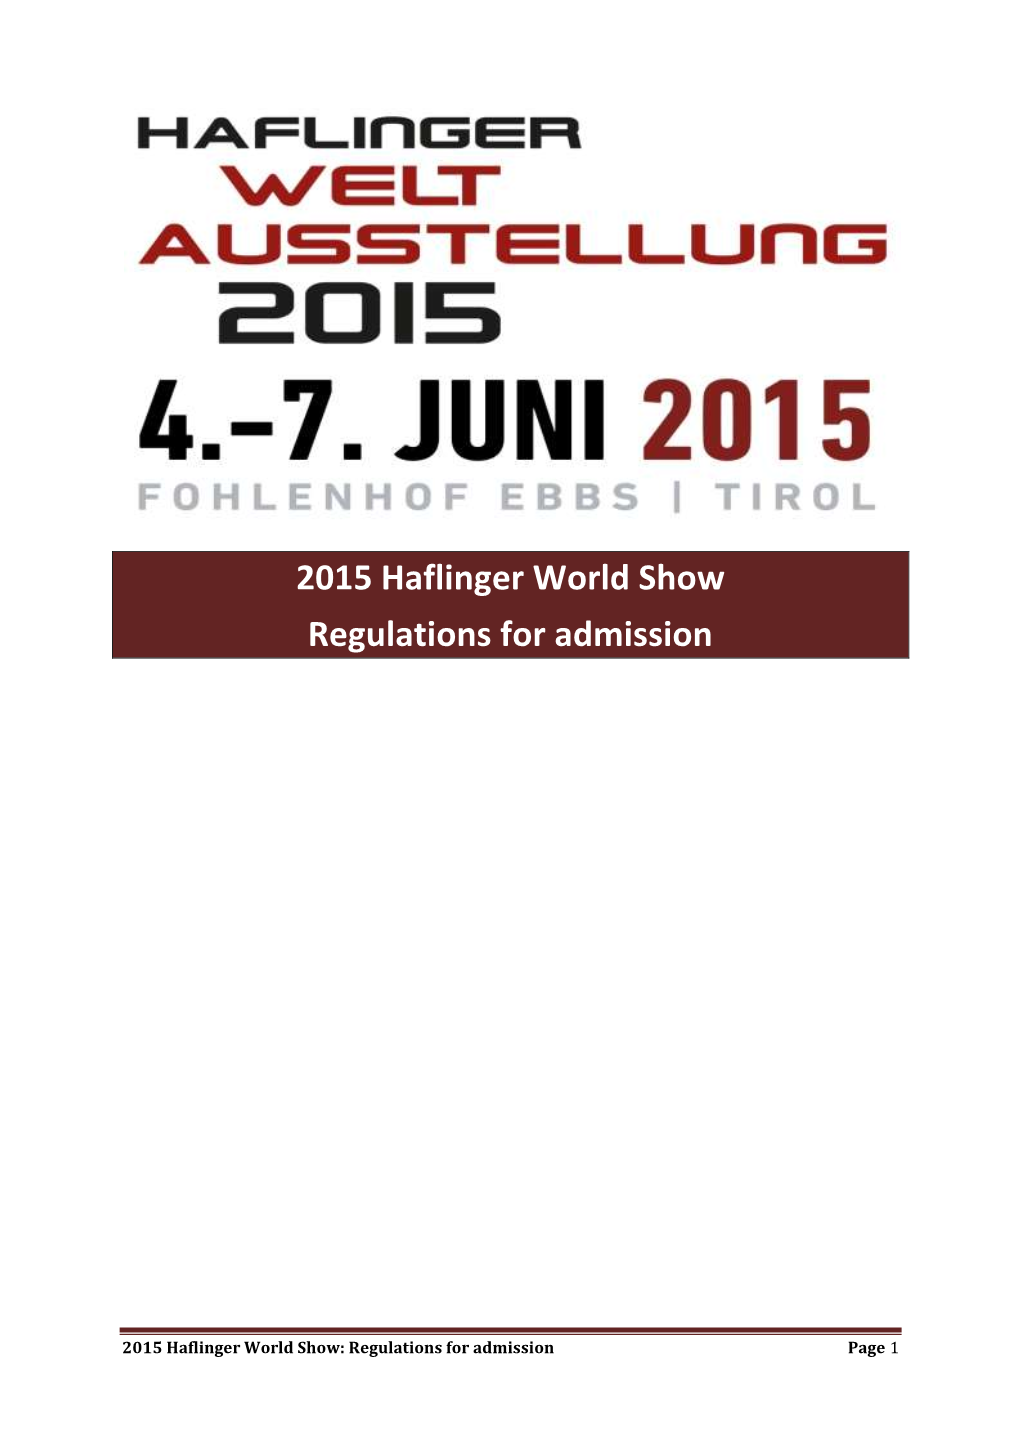 2015 Haflinger World Show Regulations for Admission